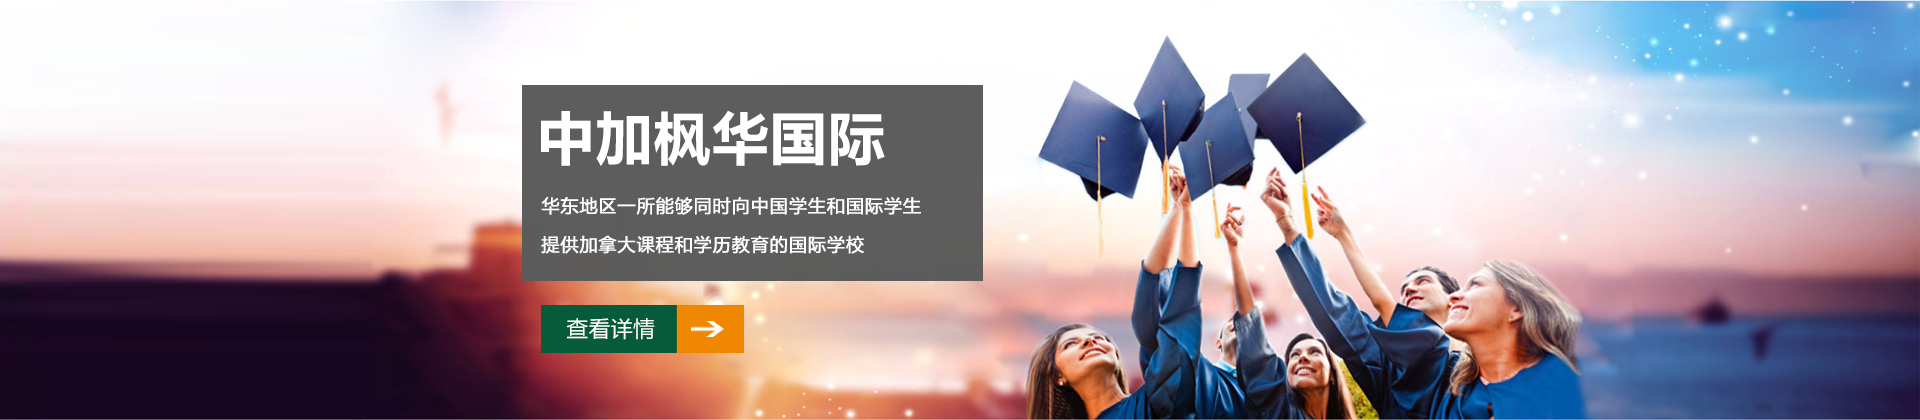 上海中加枫华国际教育